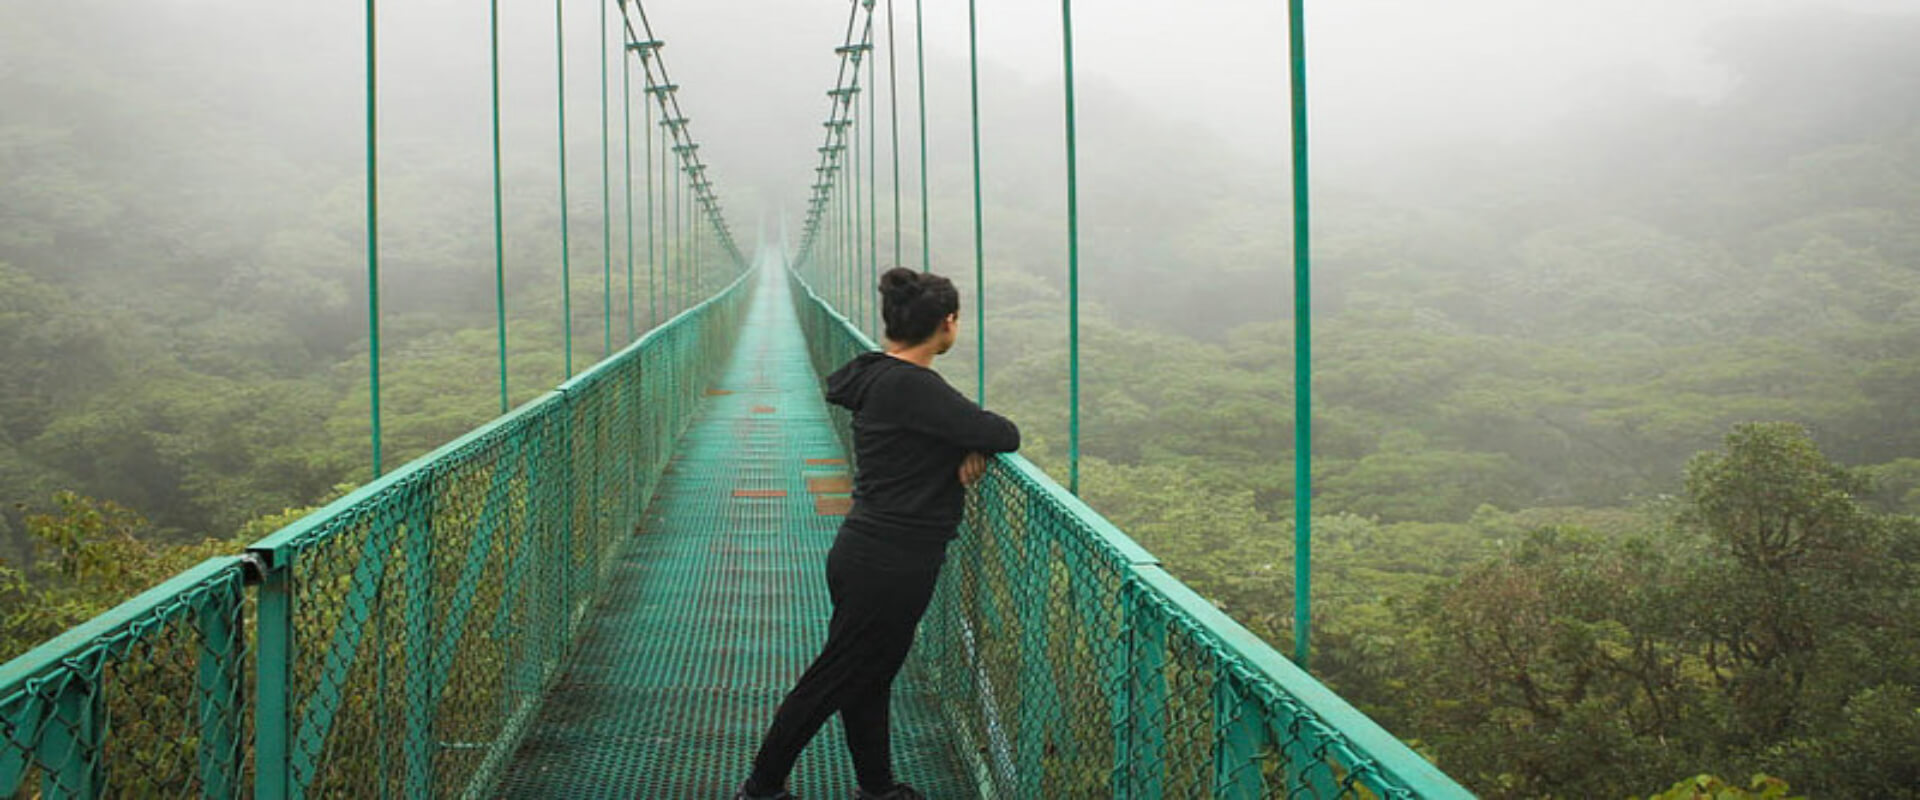 Selvatura Zip lines, Suspension Bridges & Buttlerflies | Costa Rica Jade Tours